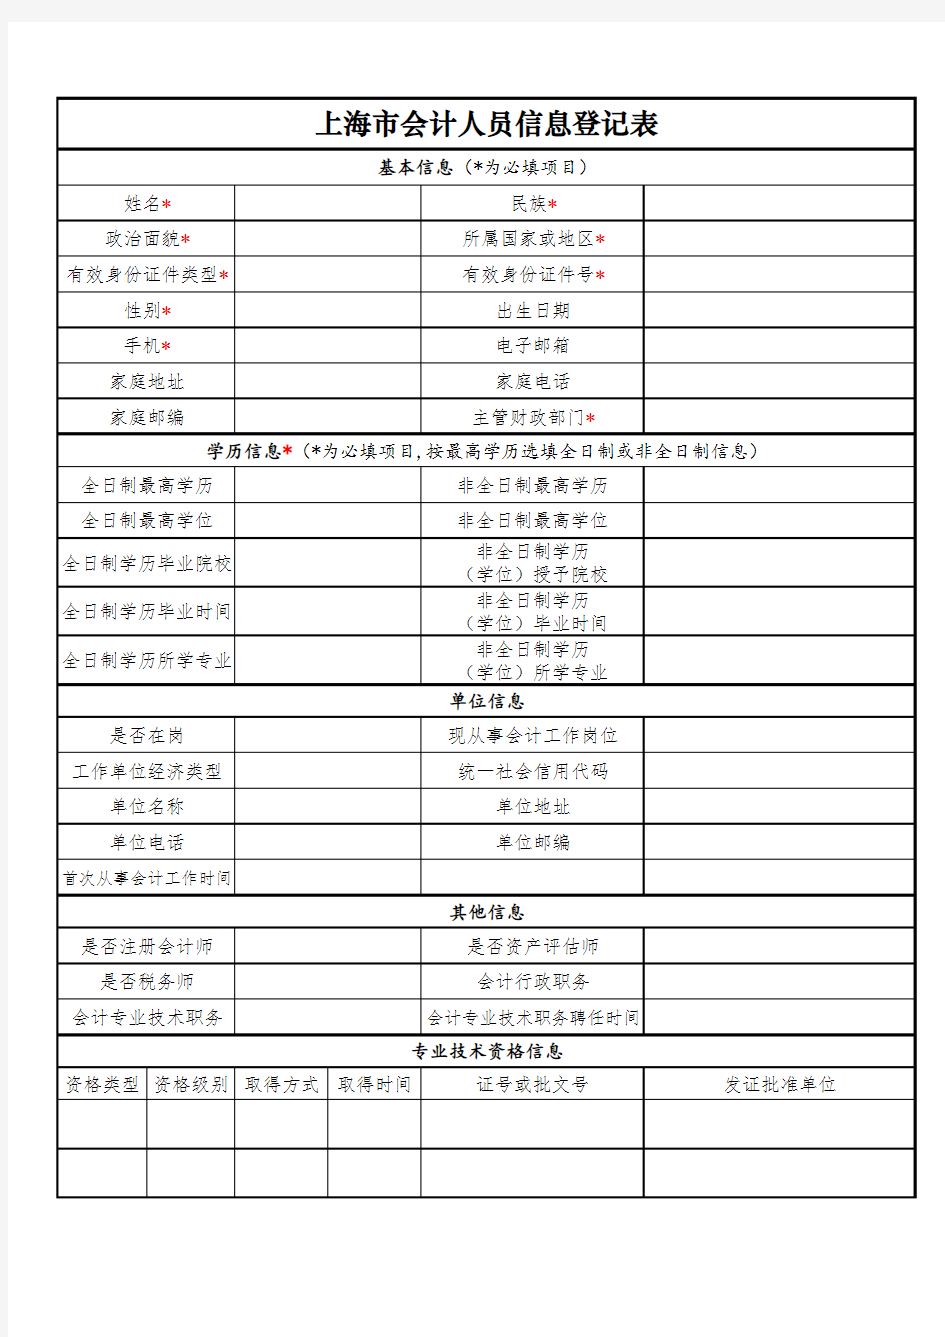 上海市会计人员信息登记表